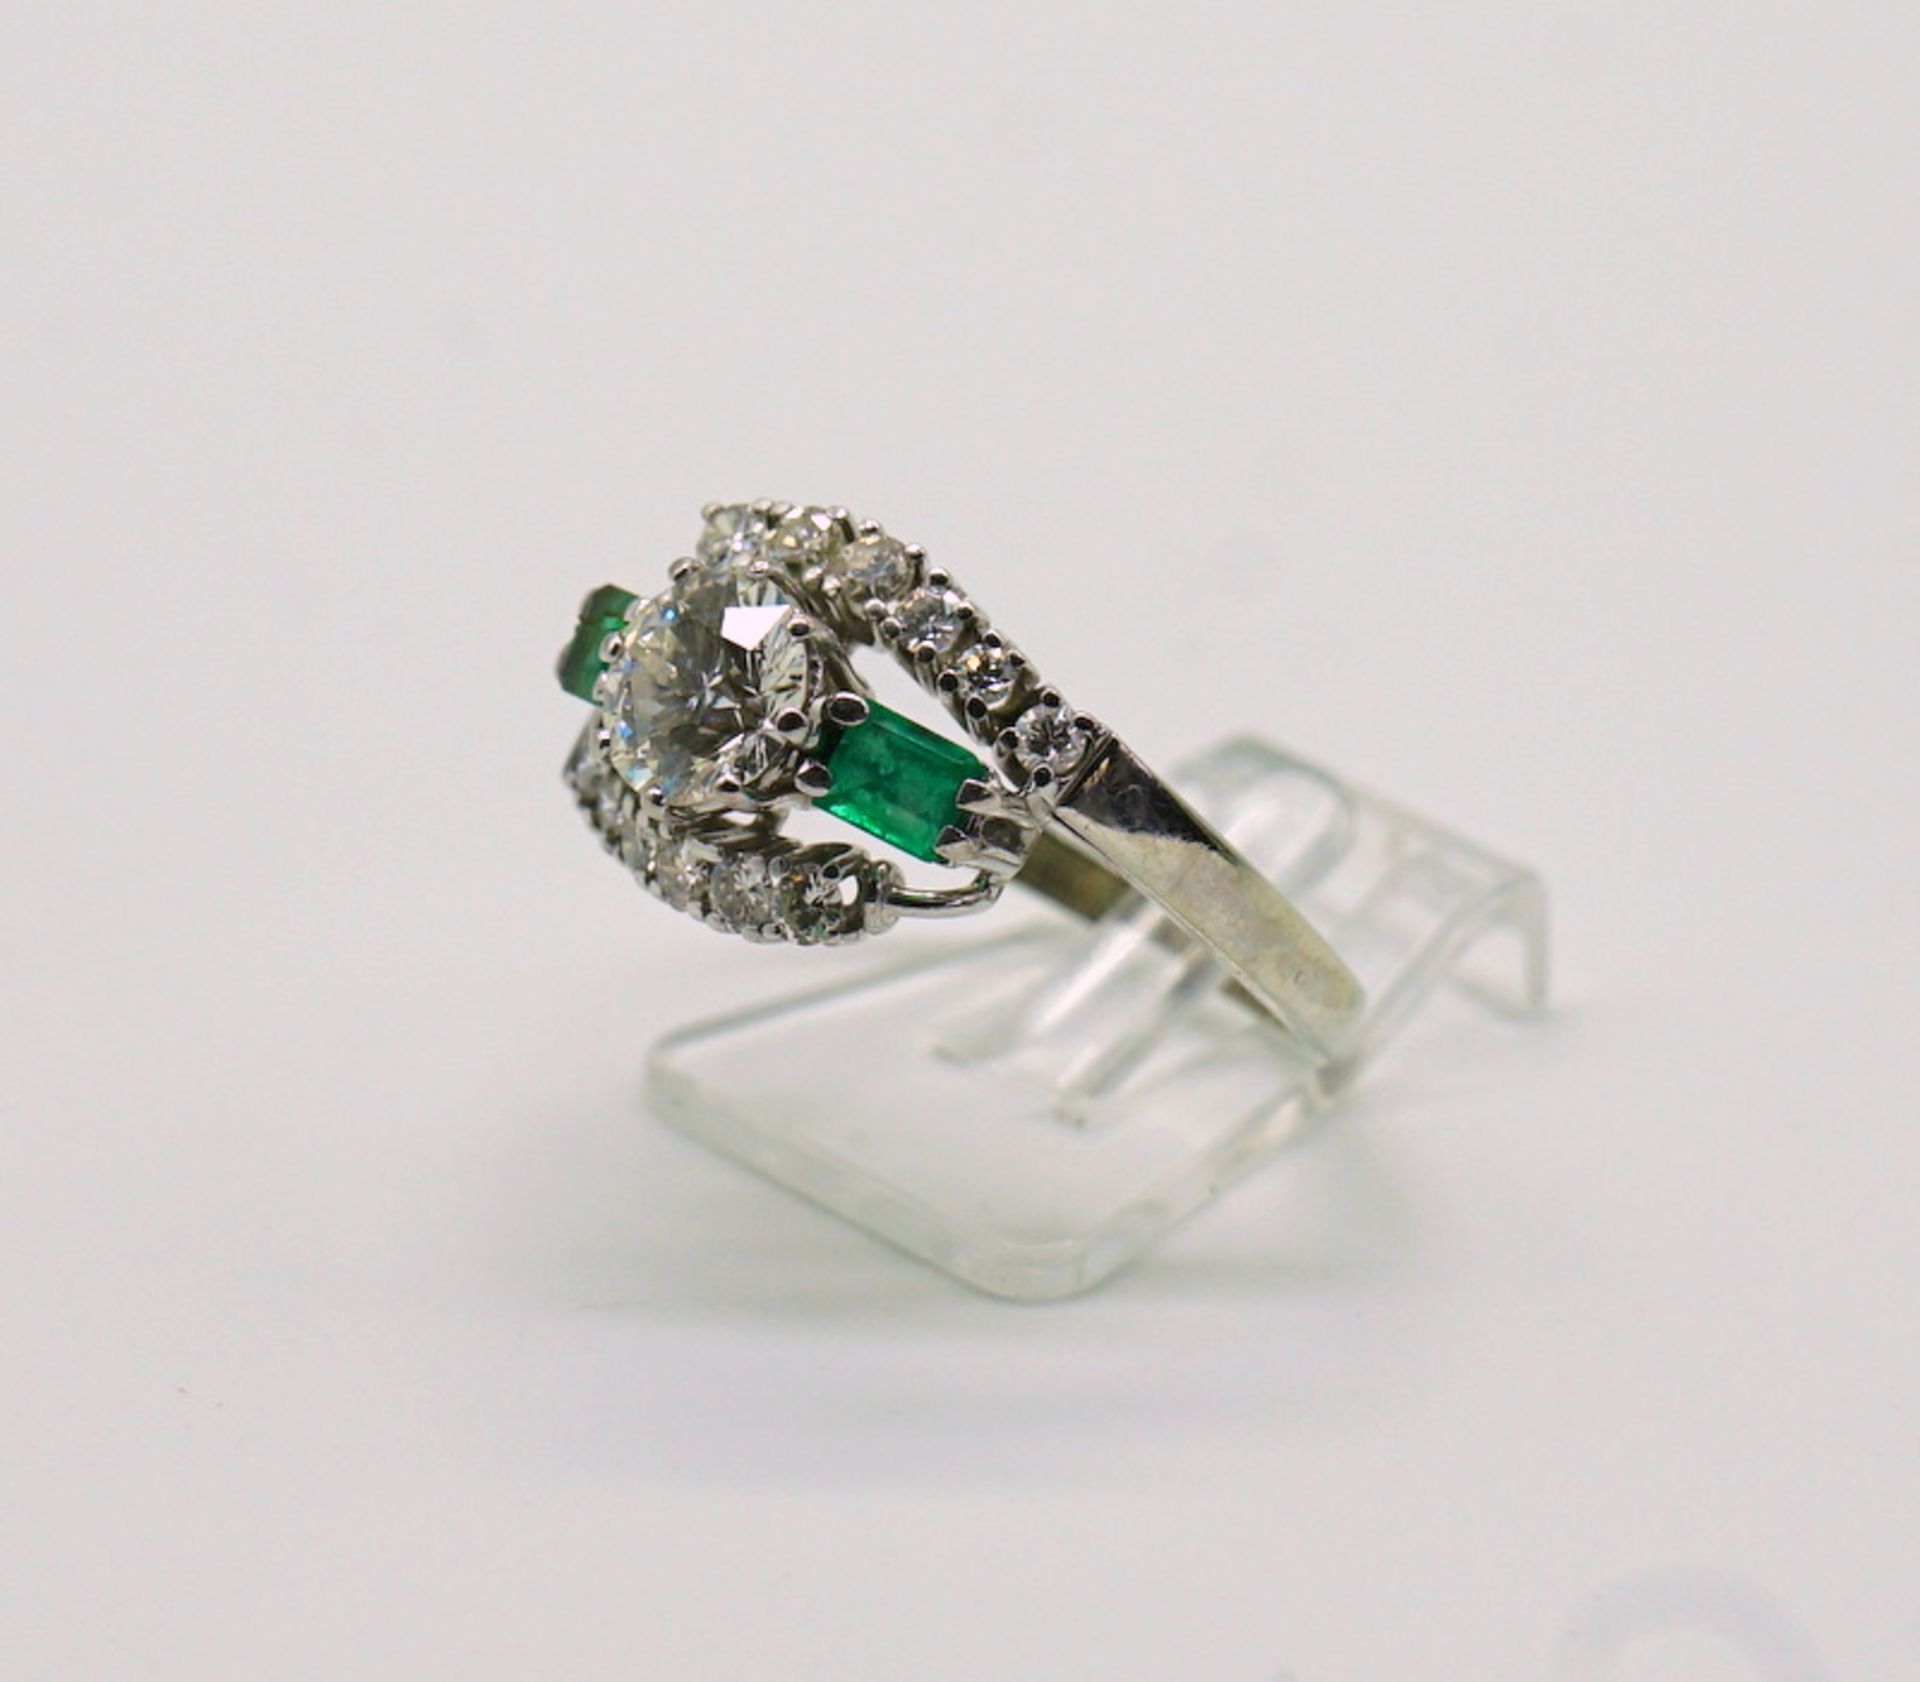 Eigenwilliger Brillant-Smaragd-Ring, zus. über 1ct Brillanten, 750 GG - Image 2 of 5